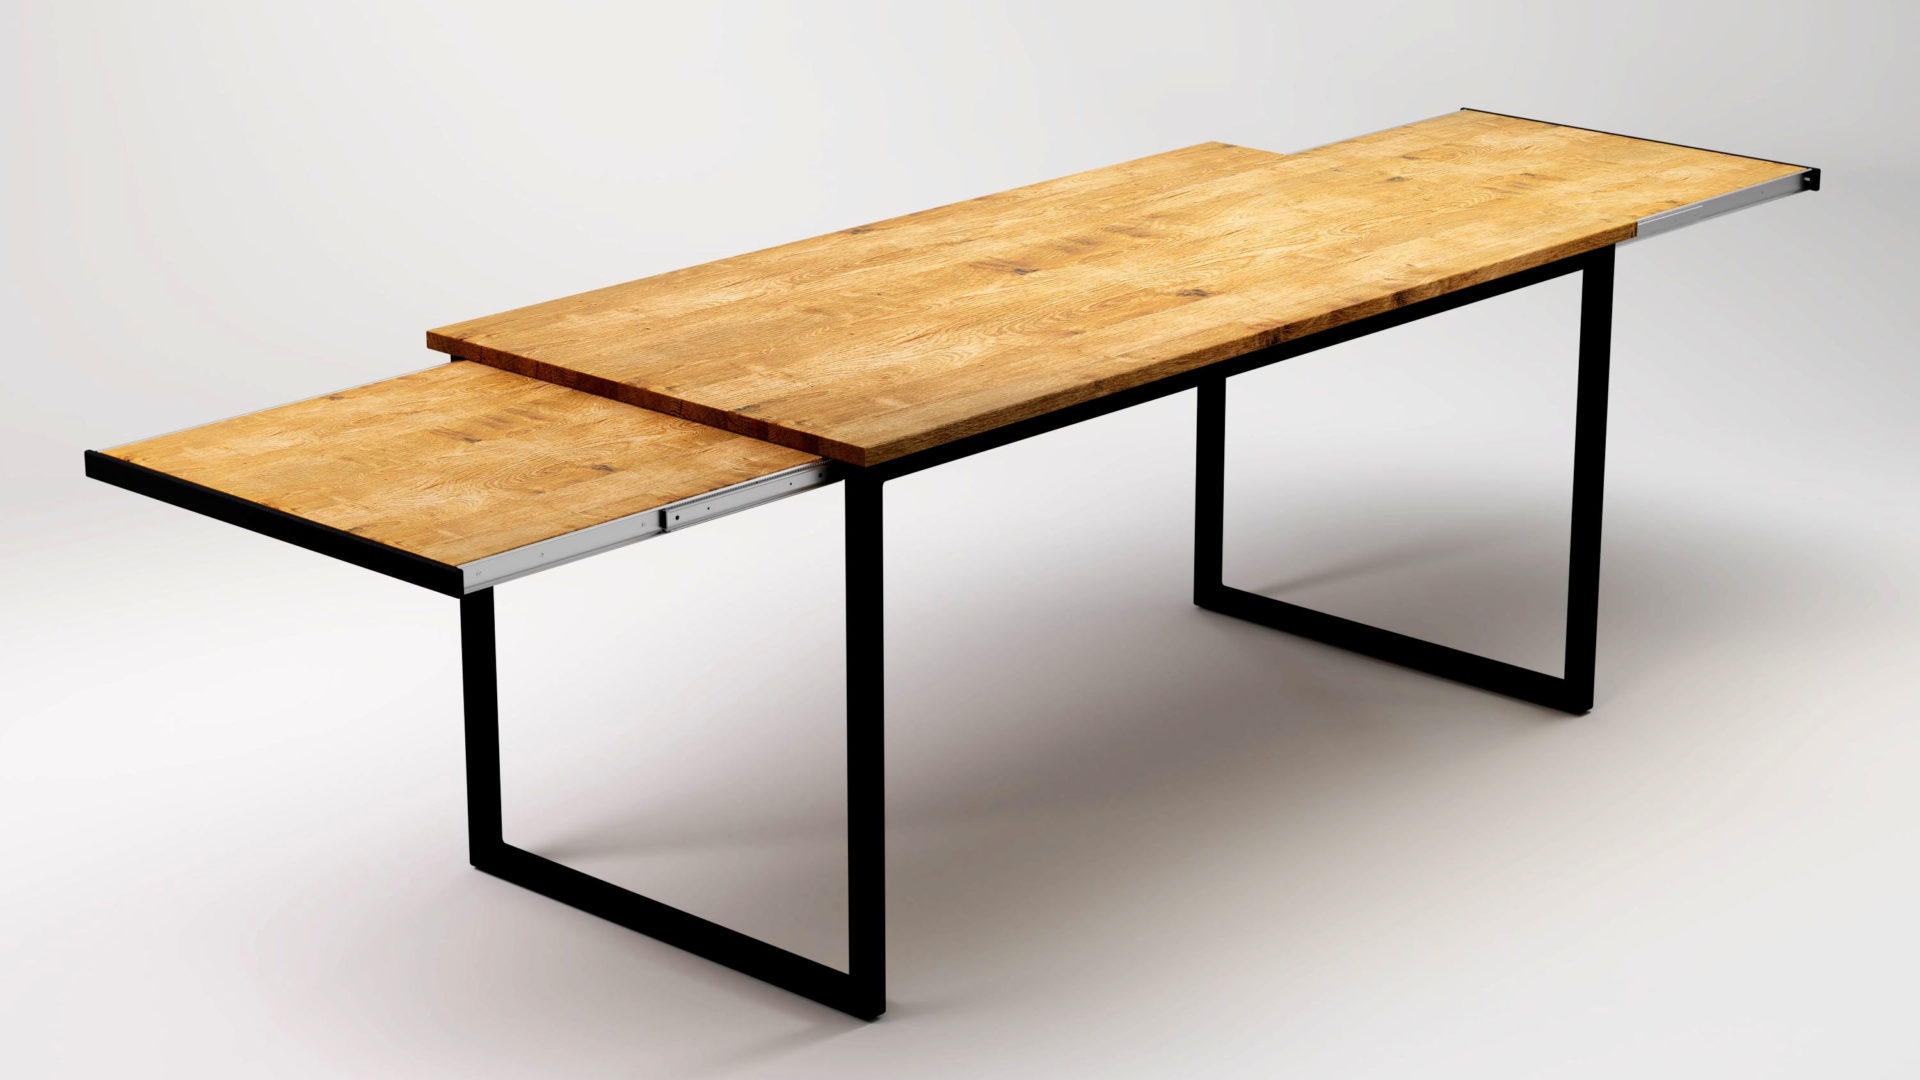 Кухонные столы из металла и дерева фото